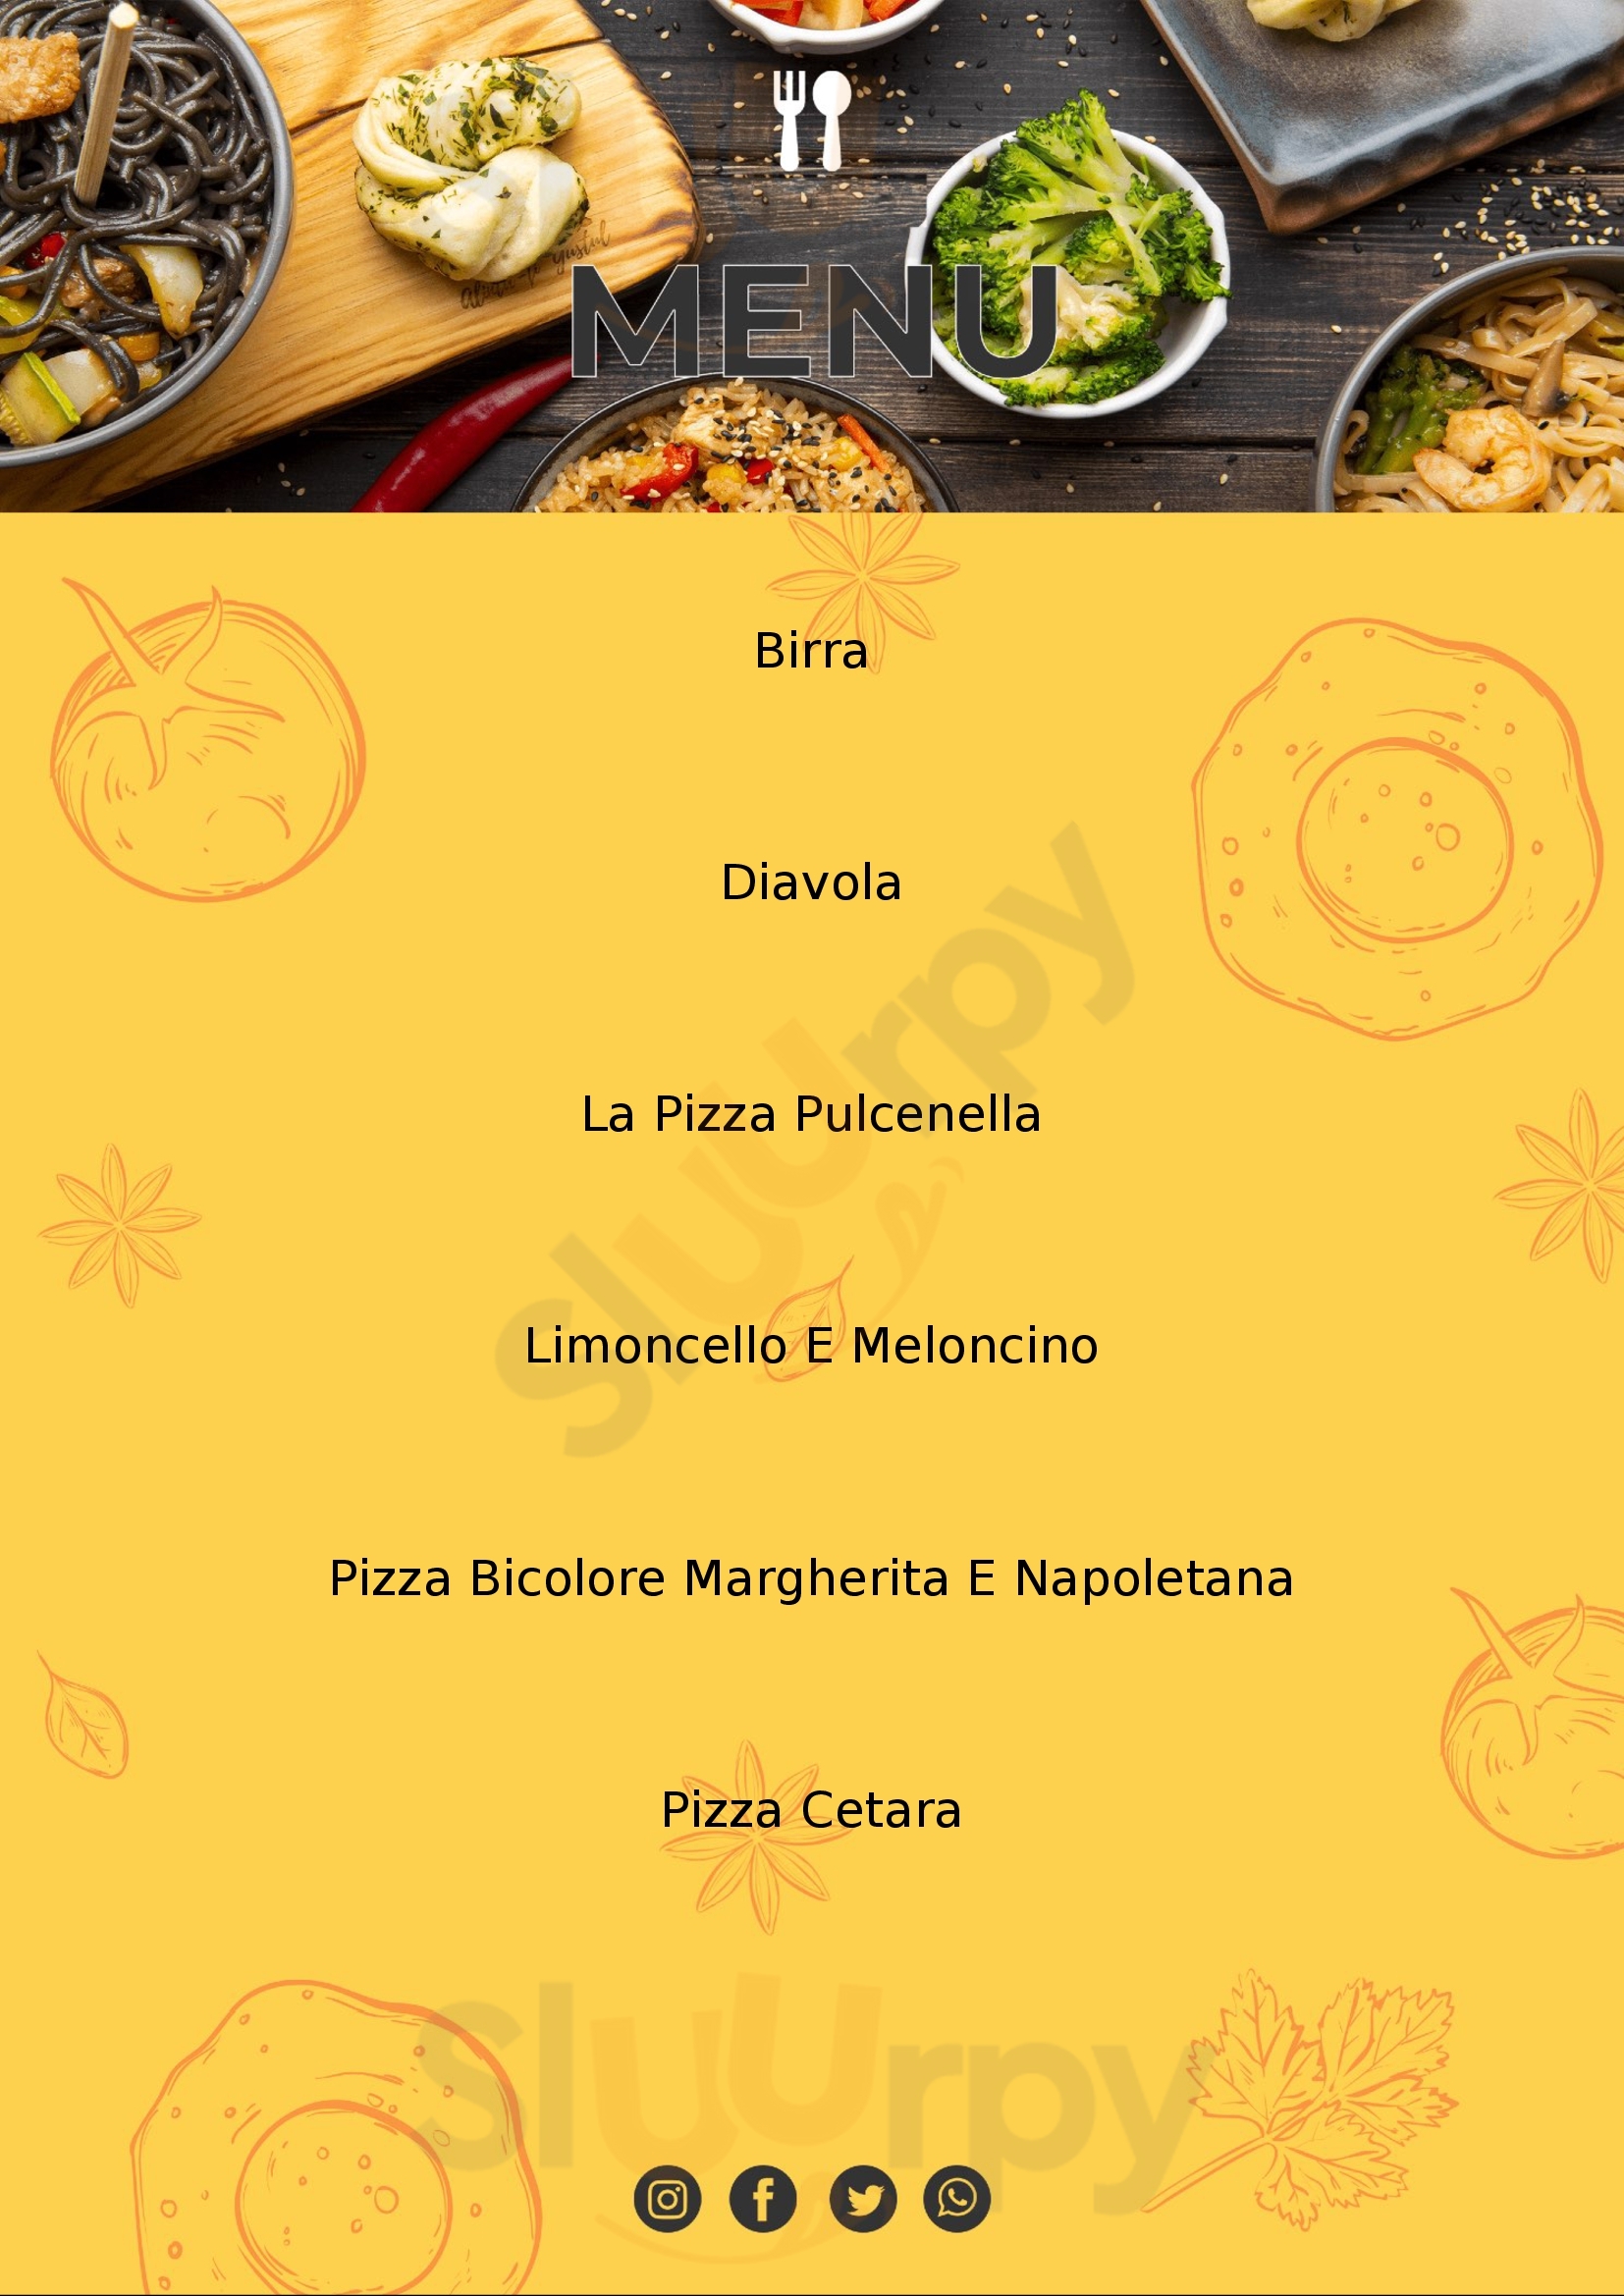 Pulecenella Pizzeria Salerno menù 1 pagina